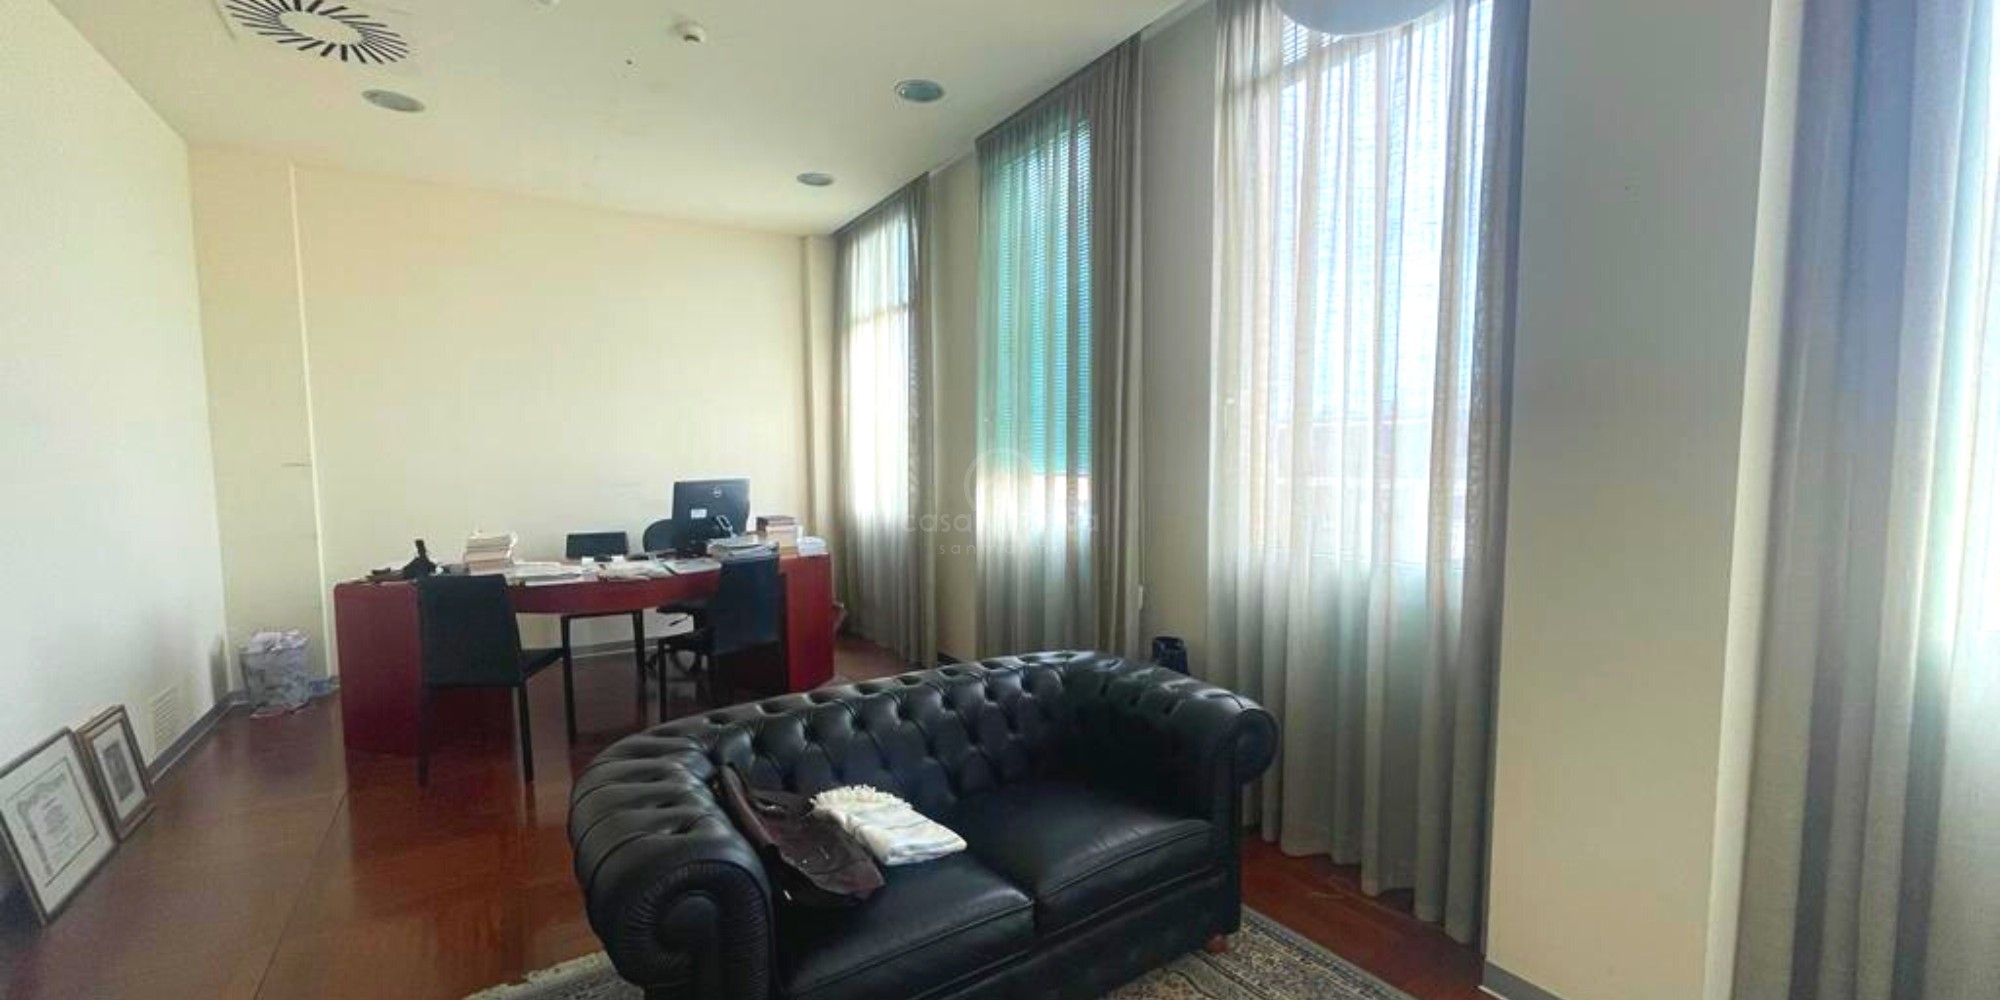 Dogana, elegante ufficio 90mq in vendita in centro direzionale di prestigio centralissimo